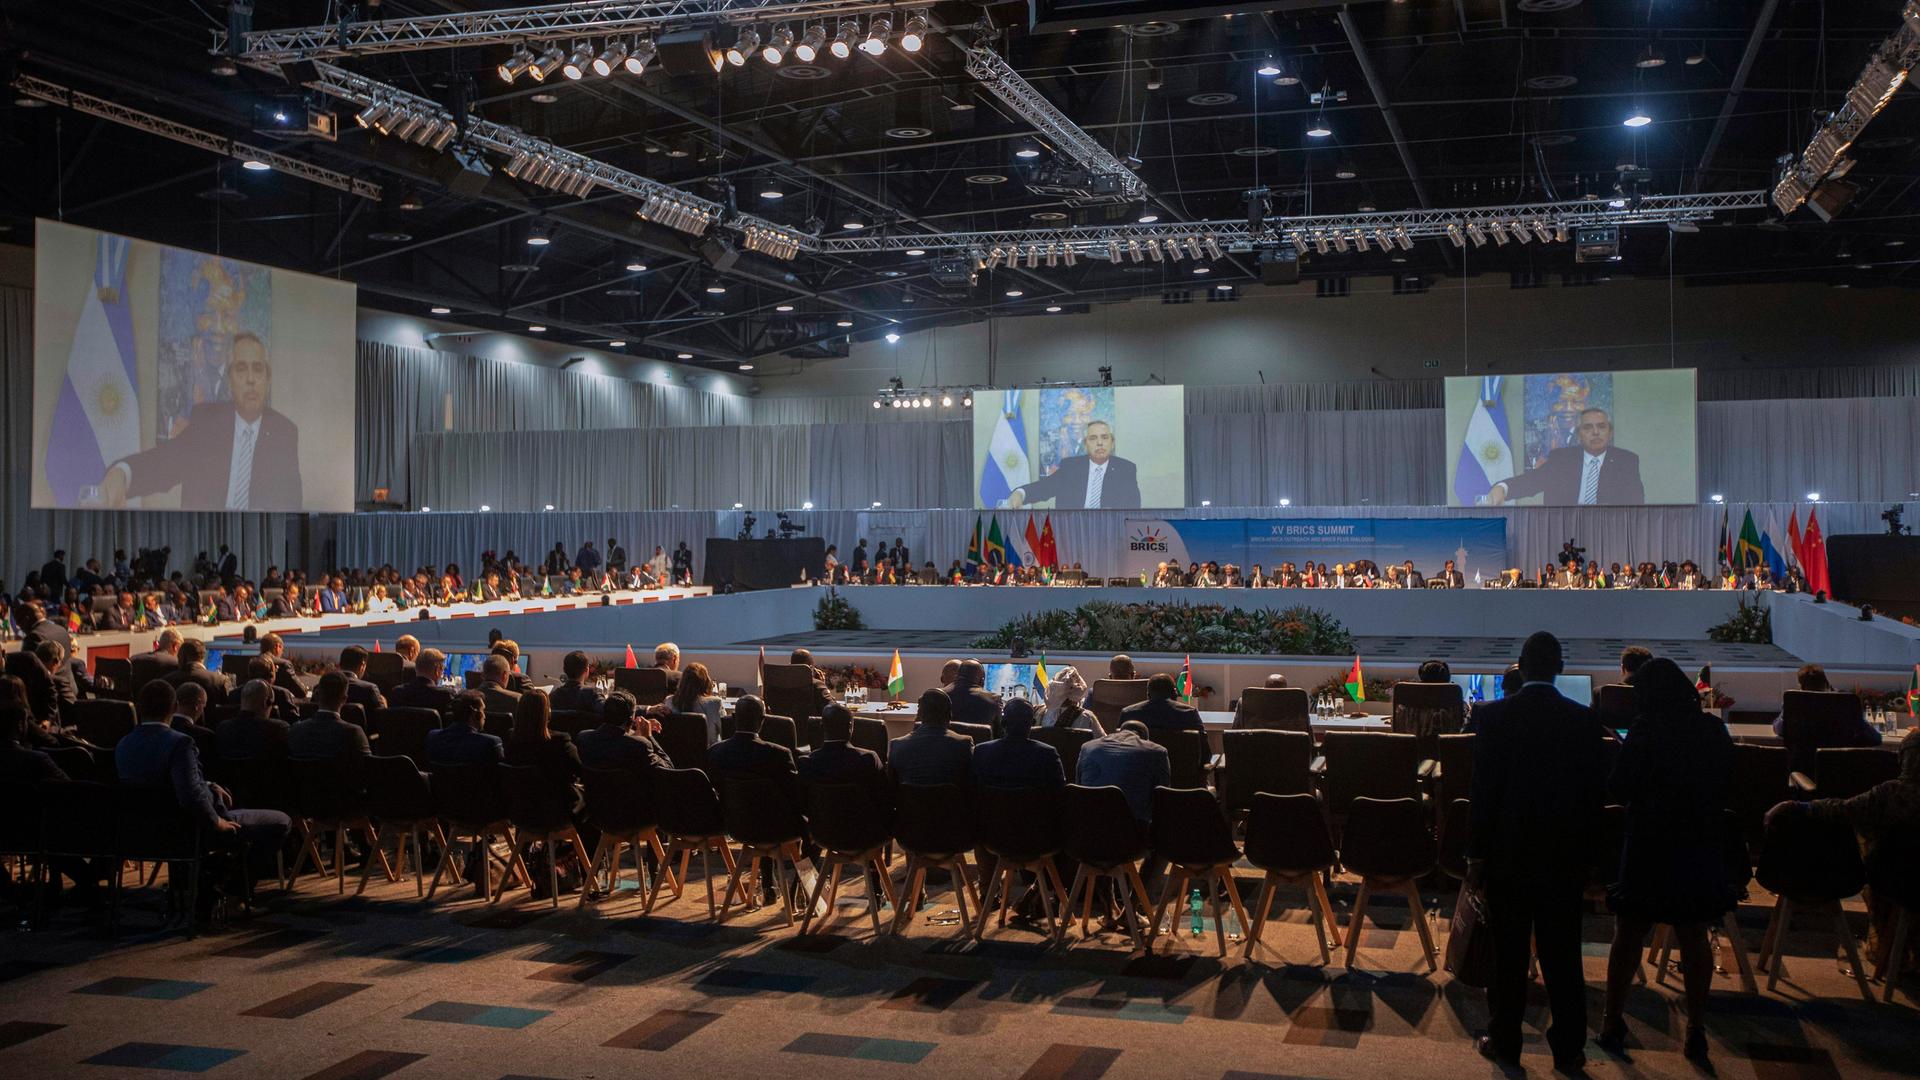 Der argentinische Präsident Alberto Angel Fernandez spricht bei der 15. Konferenz der BRICS-Staaten und wird dabei auf einen Bildschirm übertragen.